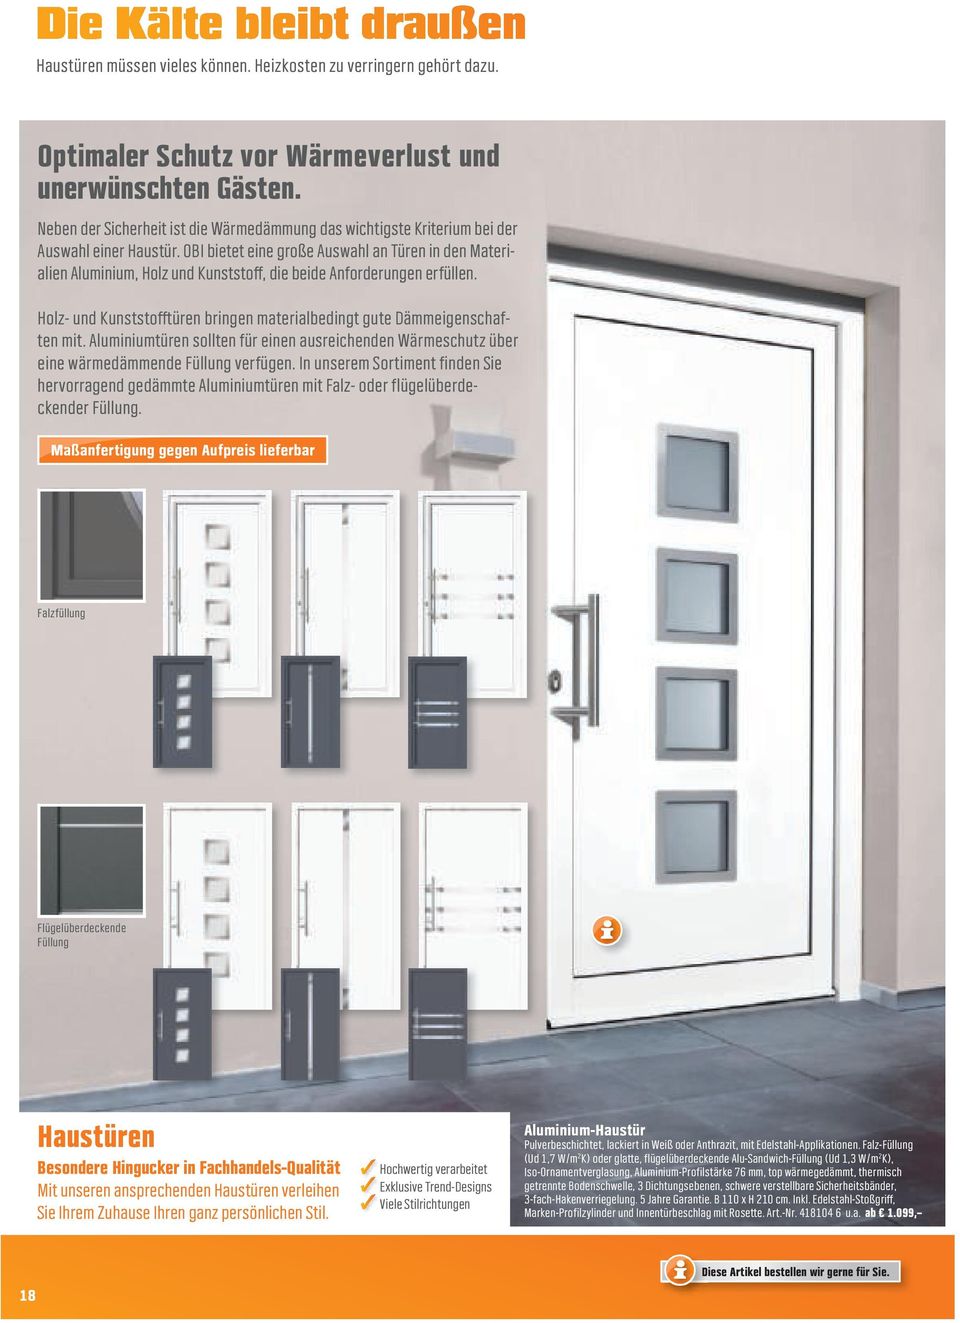 OBI bietet eine große Auswahl an Türen in den Materialien Aluminium, Holz und Kunststoff, die beide Anforderungen erfüllen.